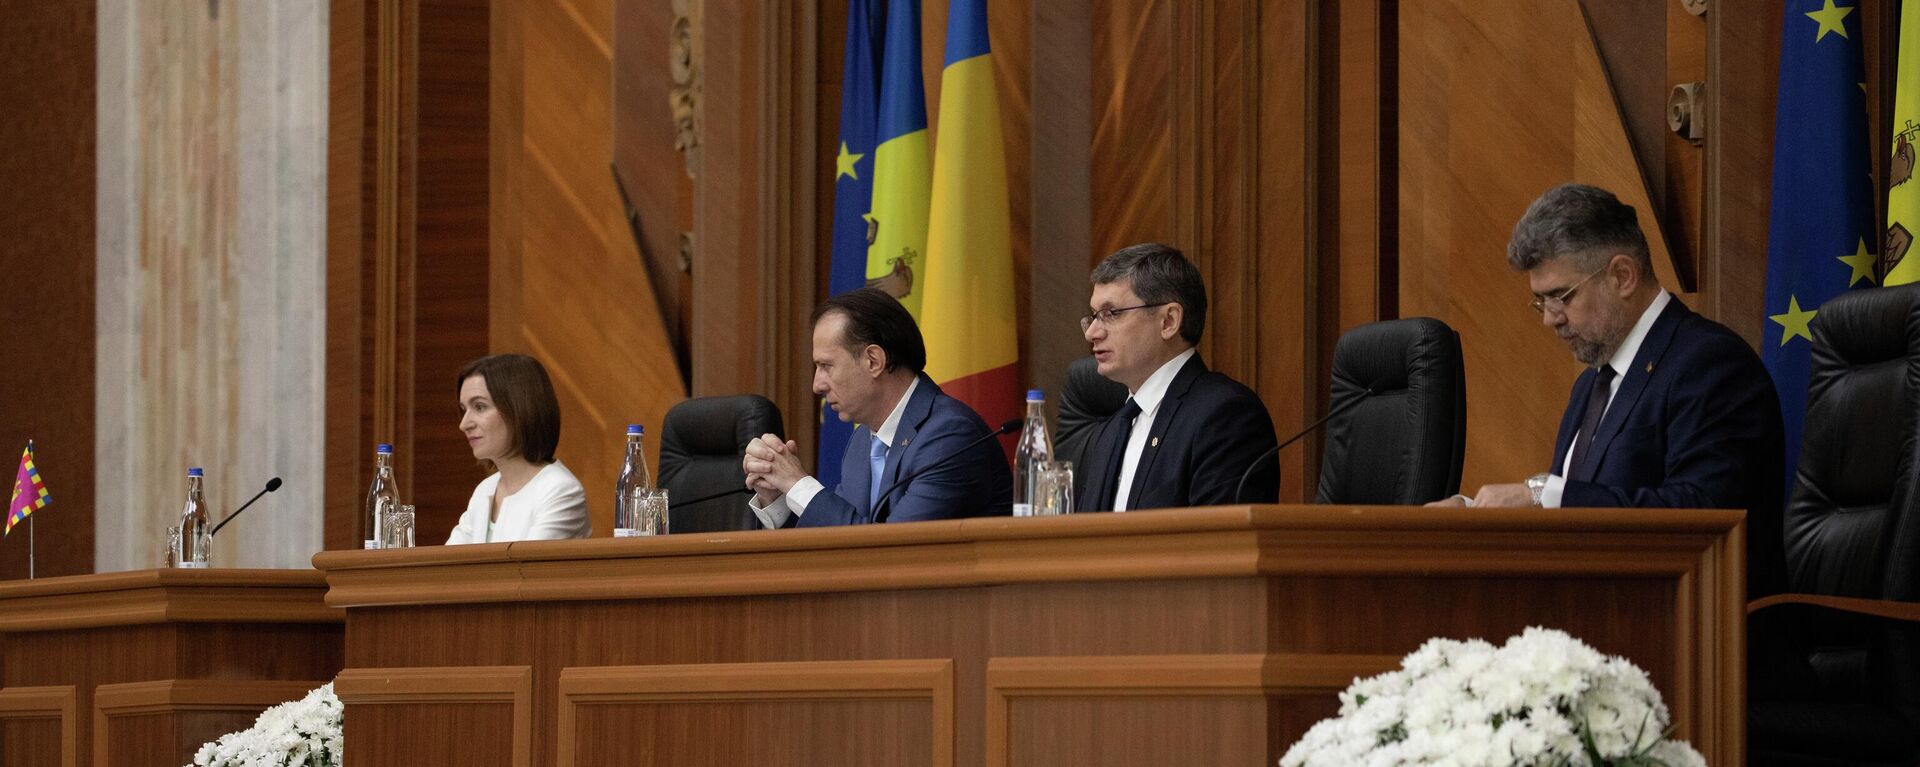 Совместное заседание парламентов Молдовы и Румынии в Кишиневе - Sputnik Молдова, 1920, 19.06.2022